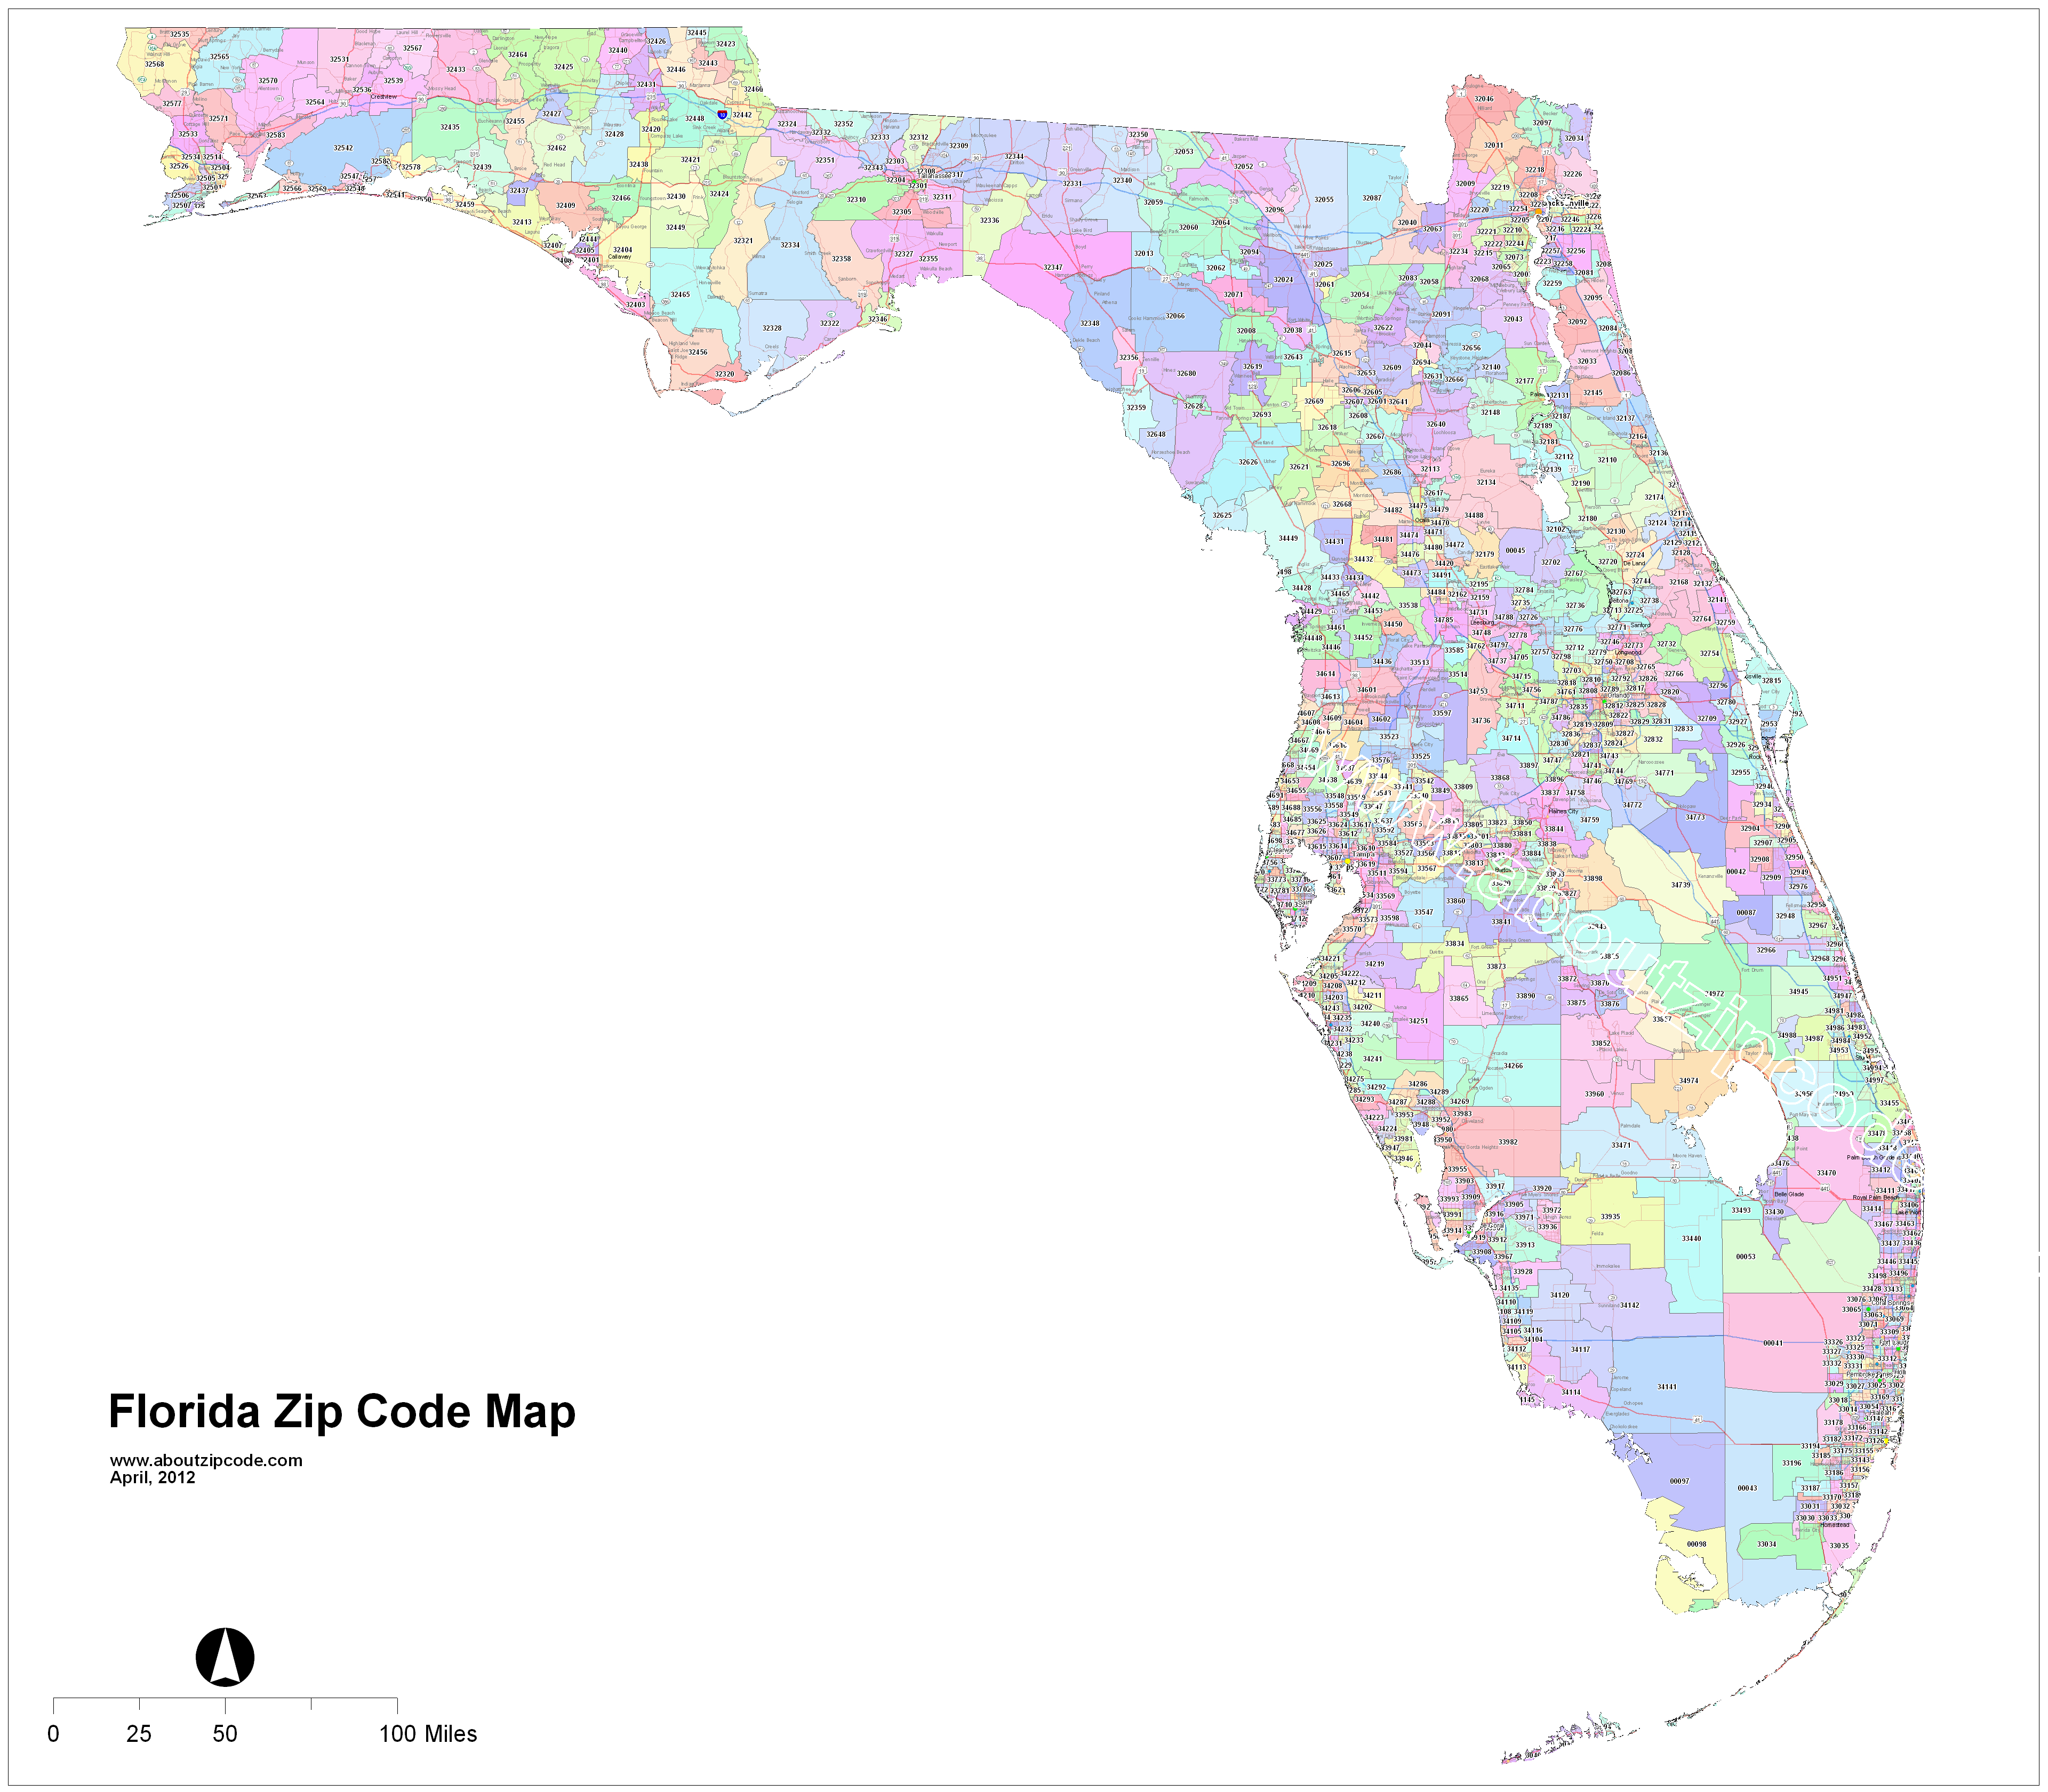 Florida Zip Code Maps - Free Florida Zip Code Maps - Florida Zip Code Map